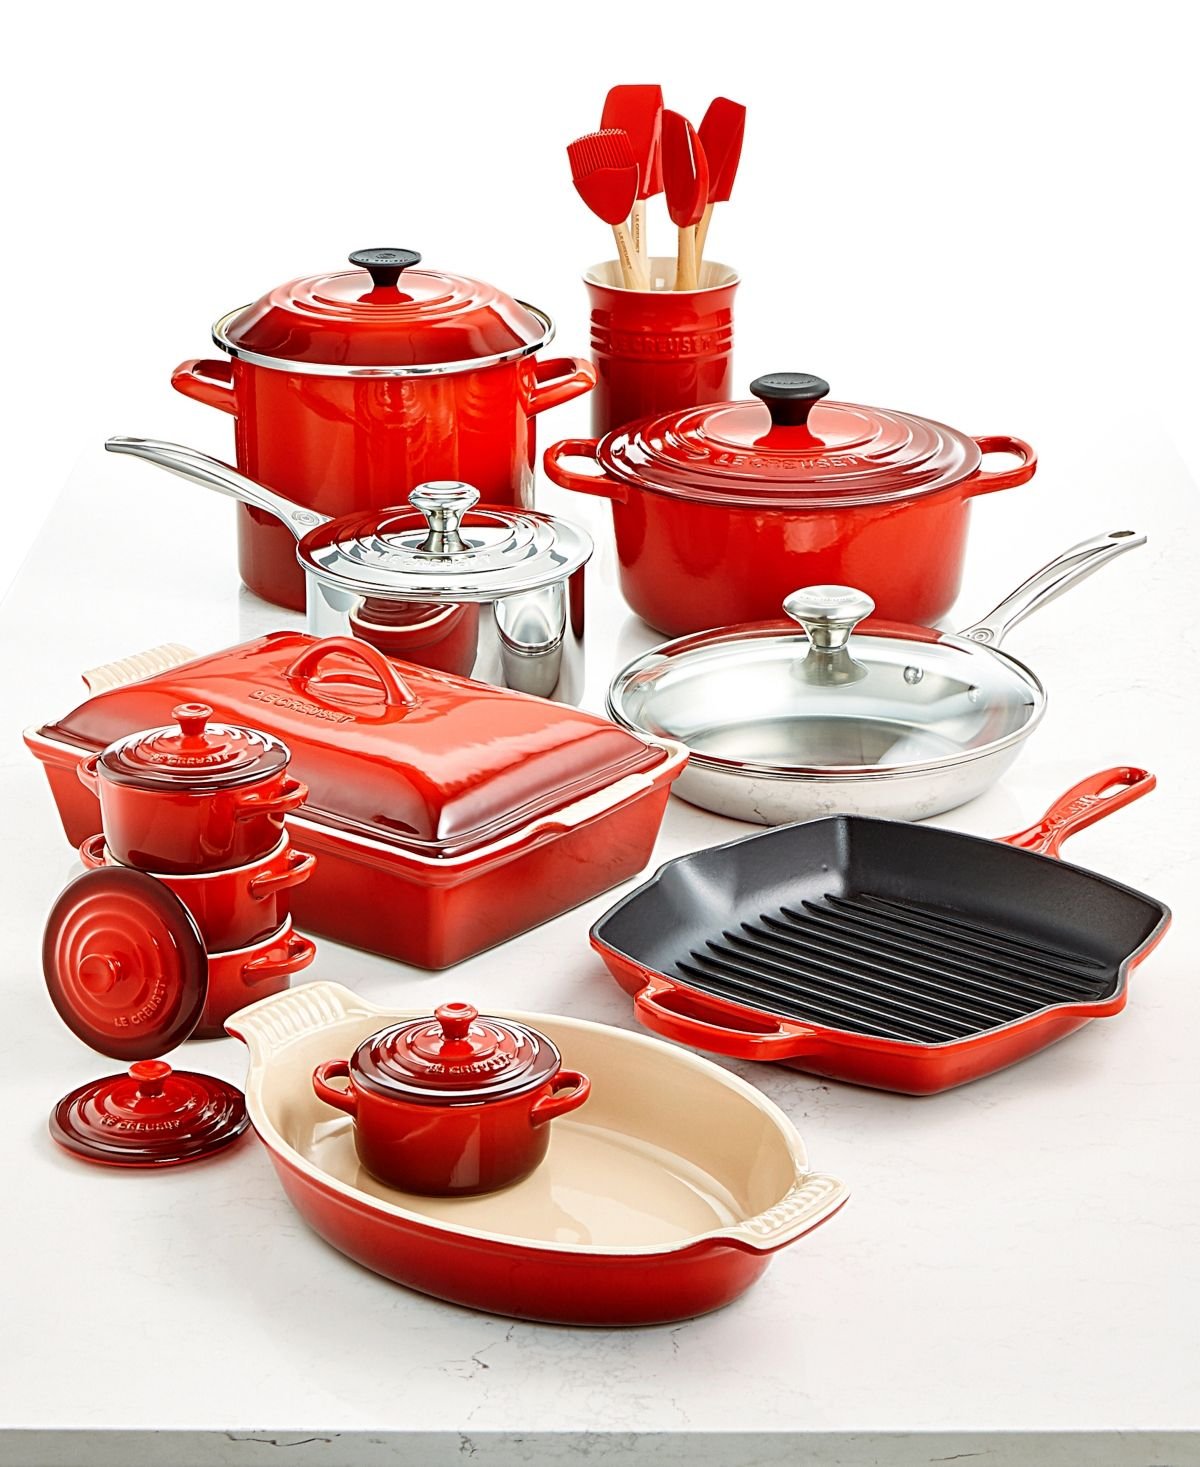 Купить красную посуду. Посуда Ле Крузет. Le Creuset посуда. Красная посуда для кухни. Необычная кухонная посуда.